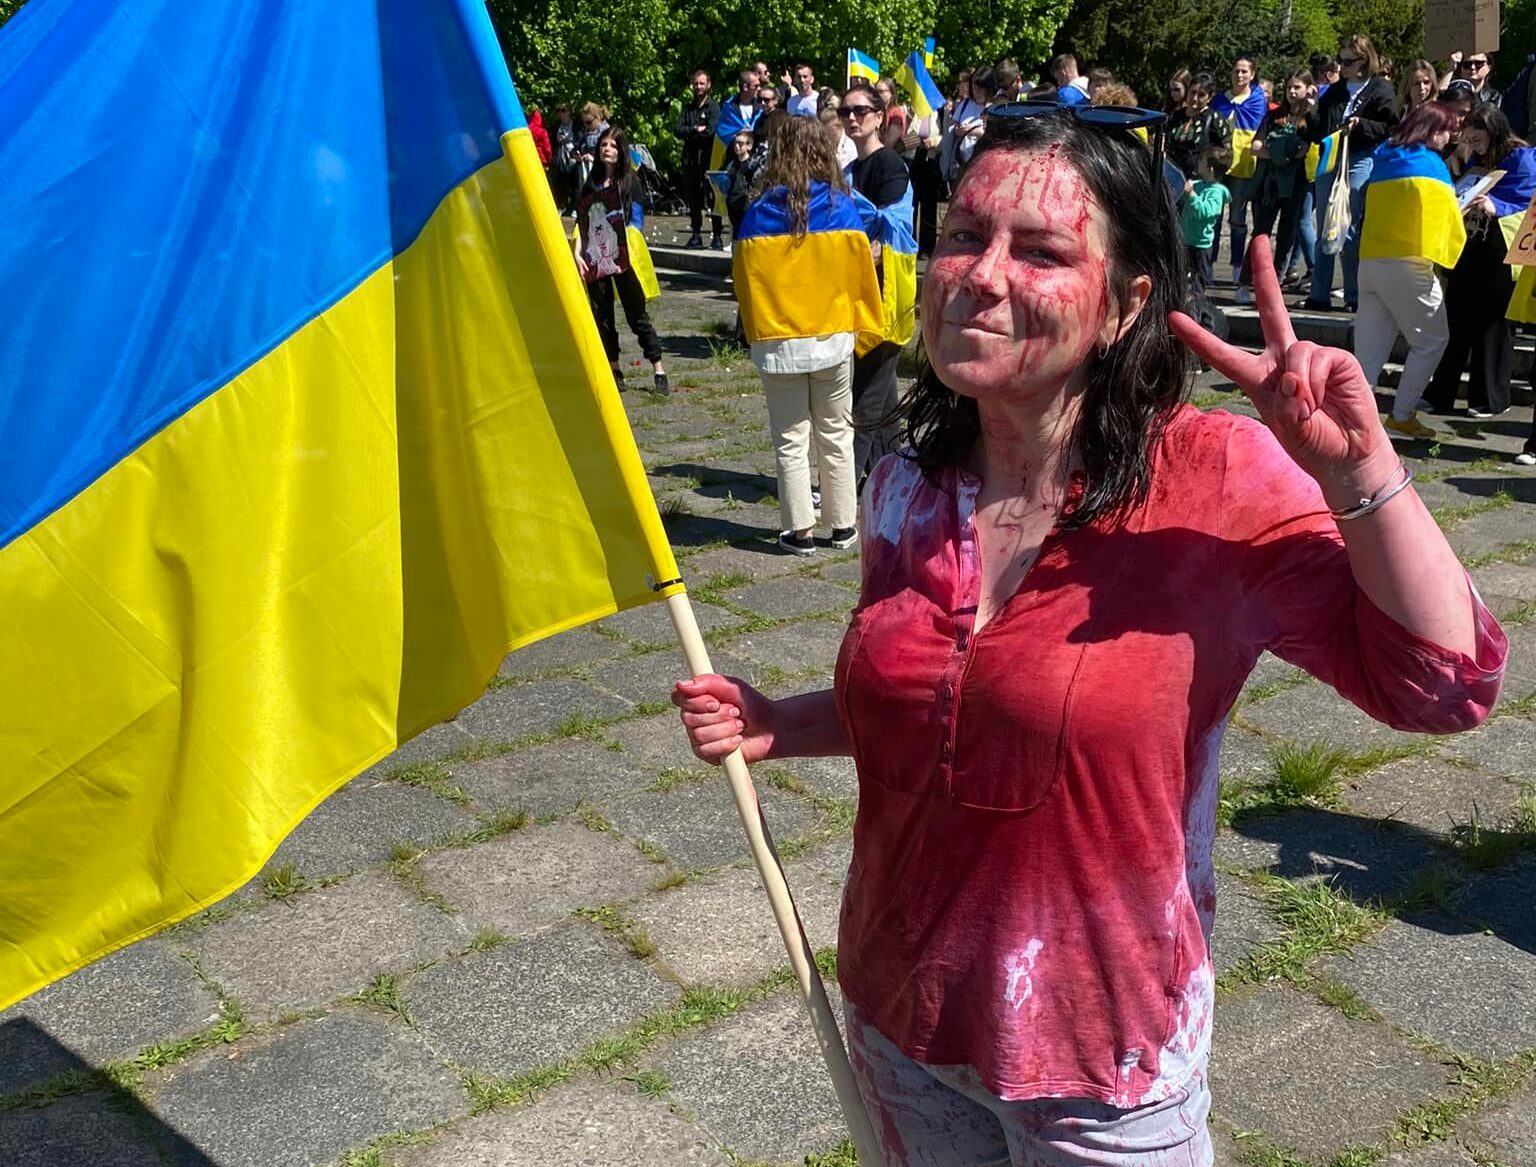 Ирина Земляная, которая провела акцию с искусственной кровью 9 мая в Варшаве, получает угрозы от россиян